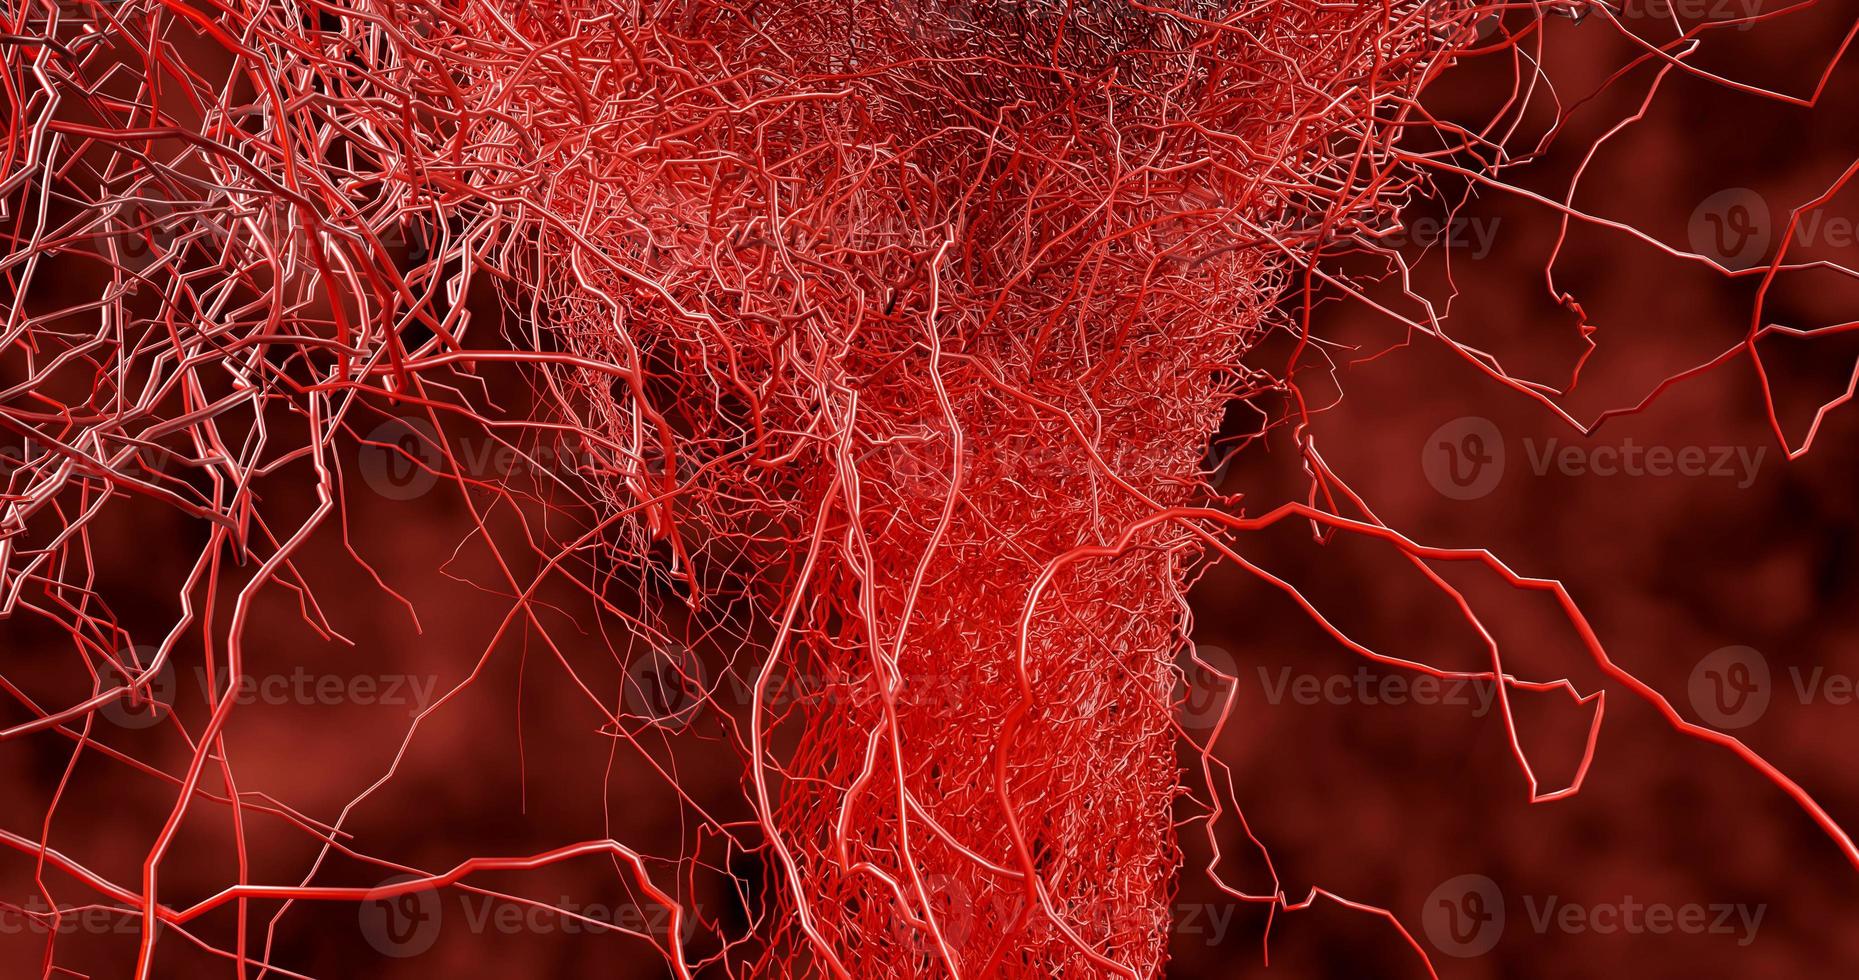 muitos pequenos capilares se ramificam do grande vaso sanguíneo foto